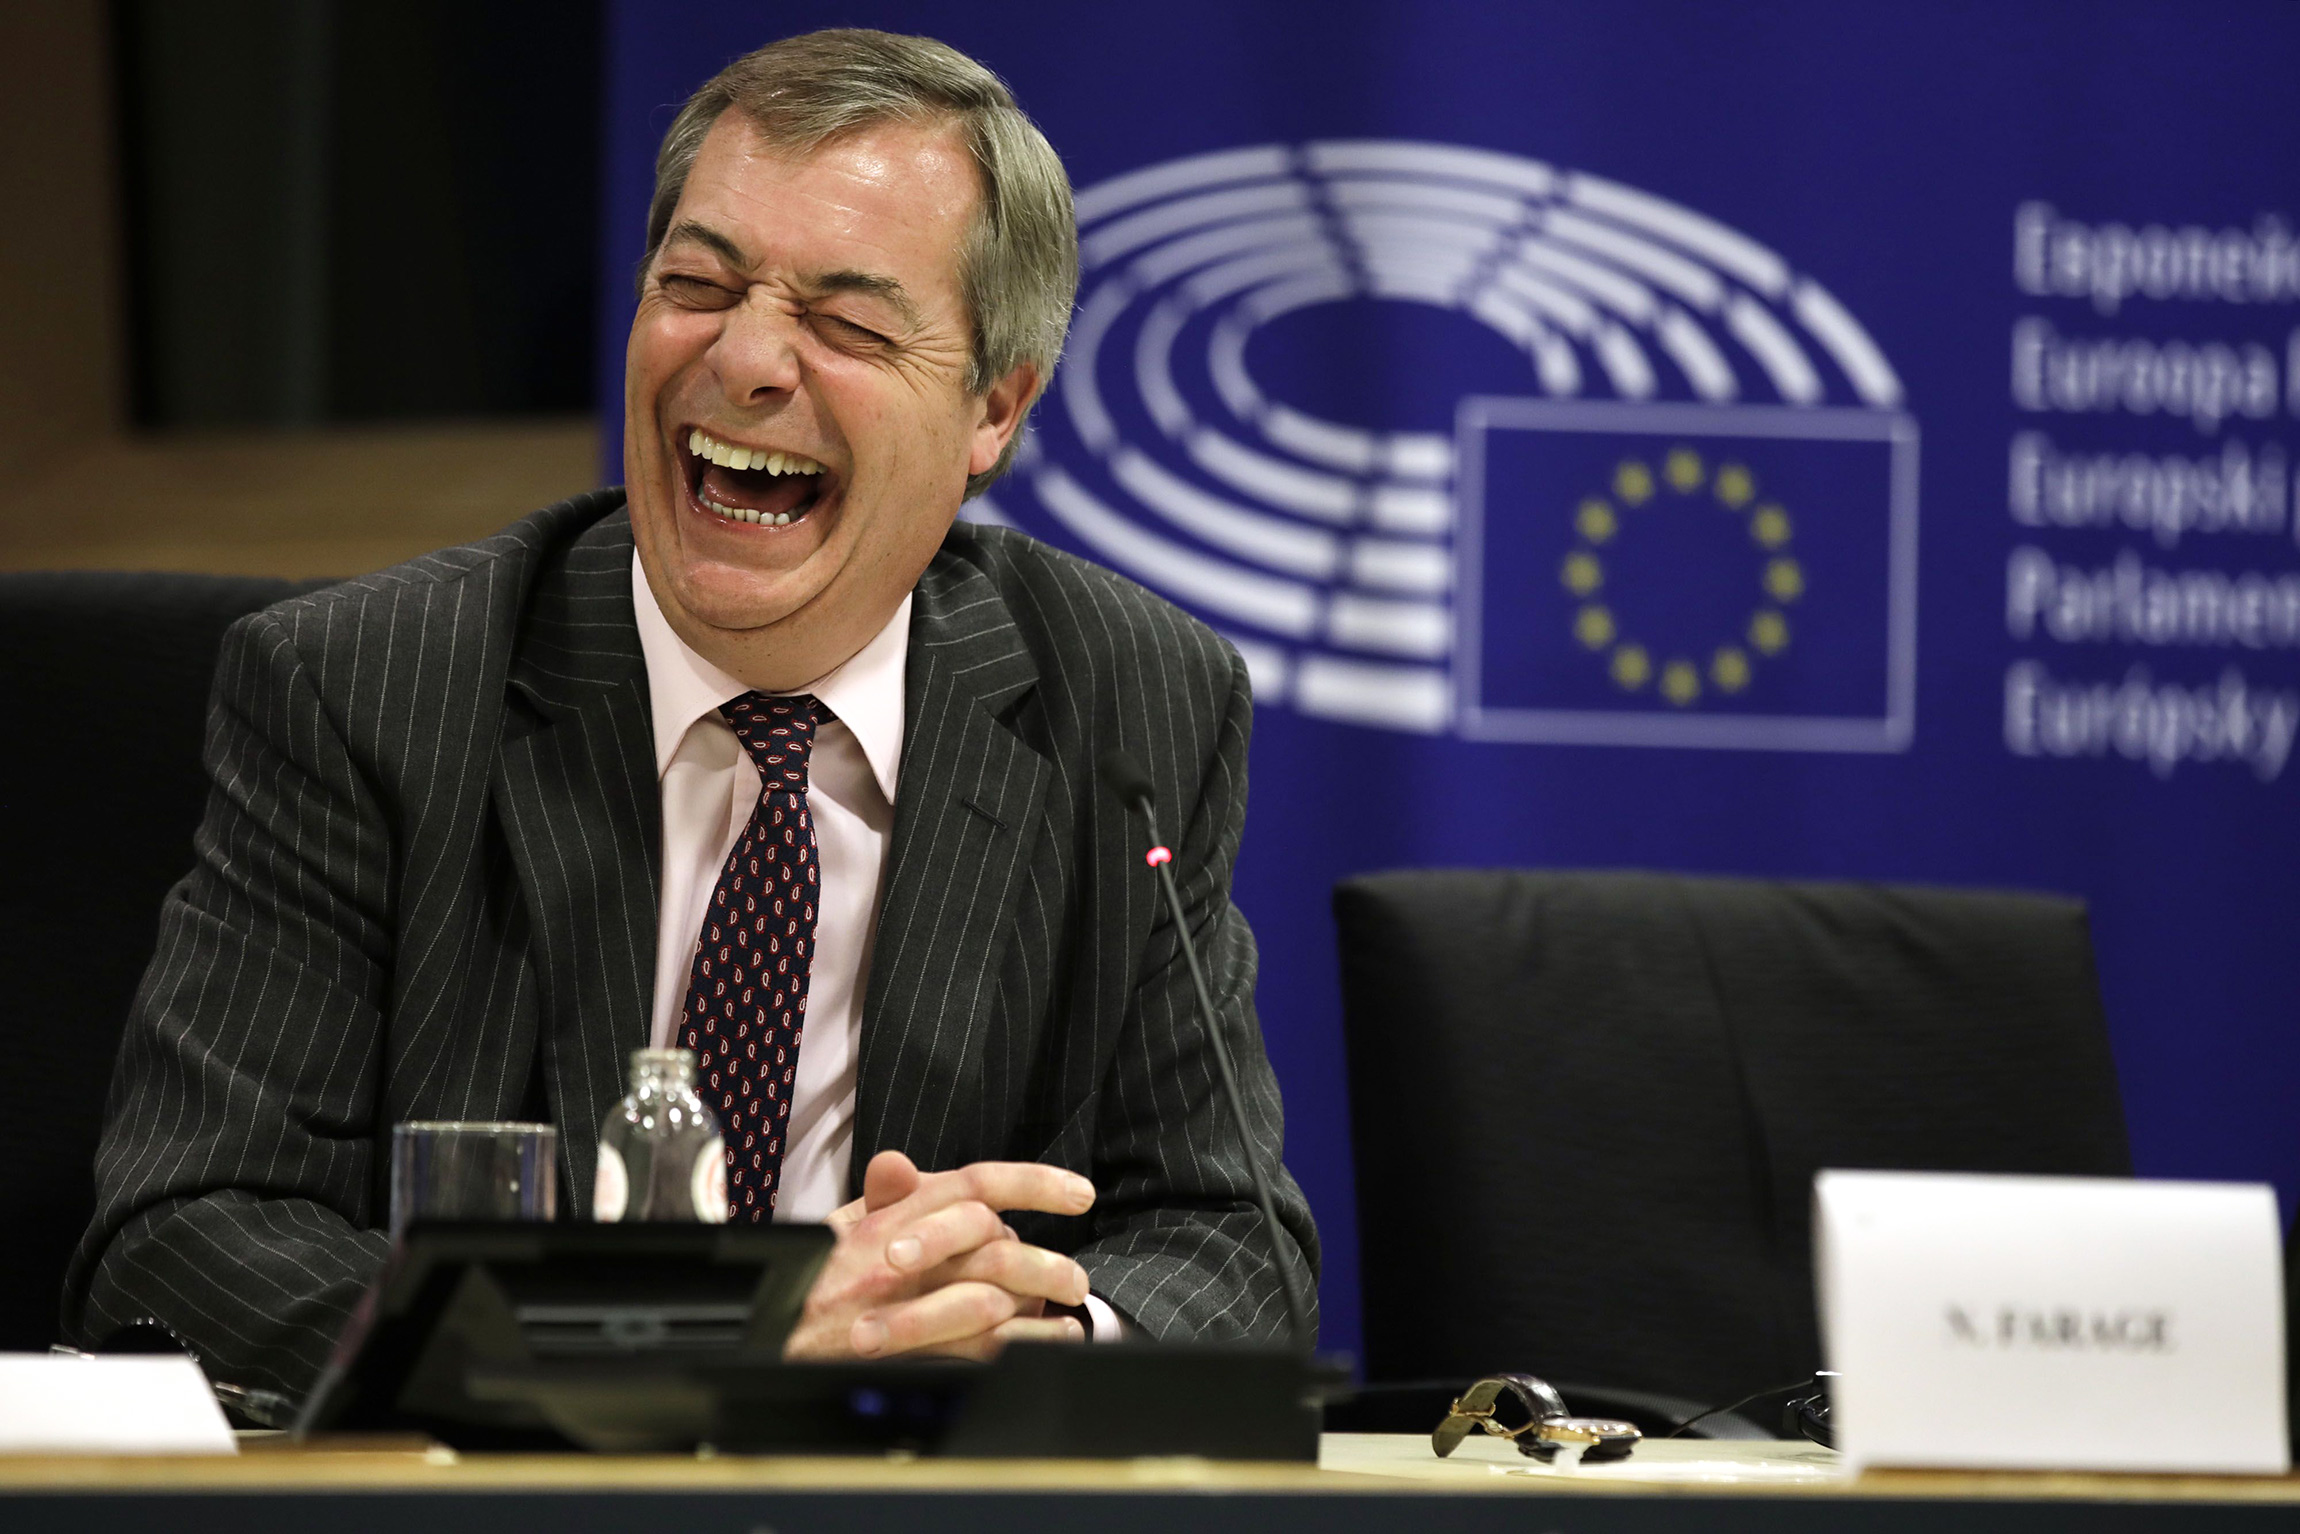 Найджел Фарадж, член Европарламента, лидер британских евроскептиков, после выступления в Европейском парламенте в Брюсселе. 29 января.

Великобритания вышла из ЕС в ночь с 31 января на 1 февраля после 47 лет пребывания в этом объединении